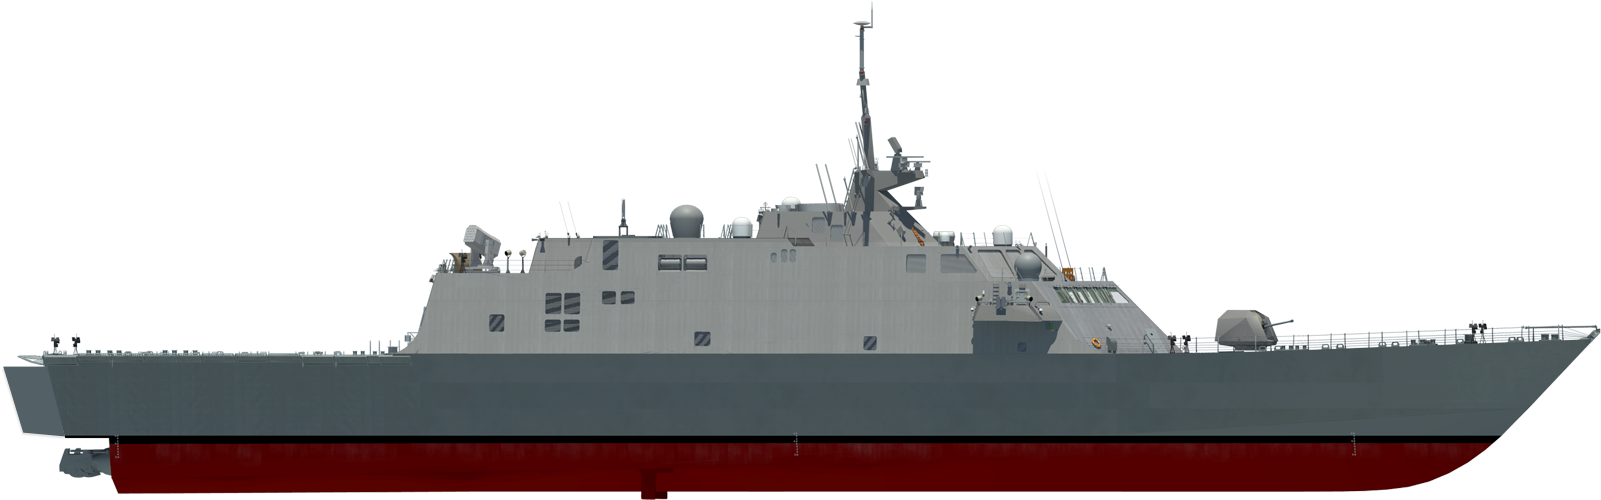 Modern Warship Profile PNG